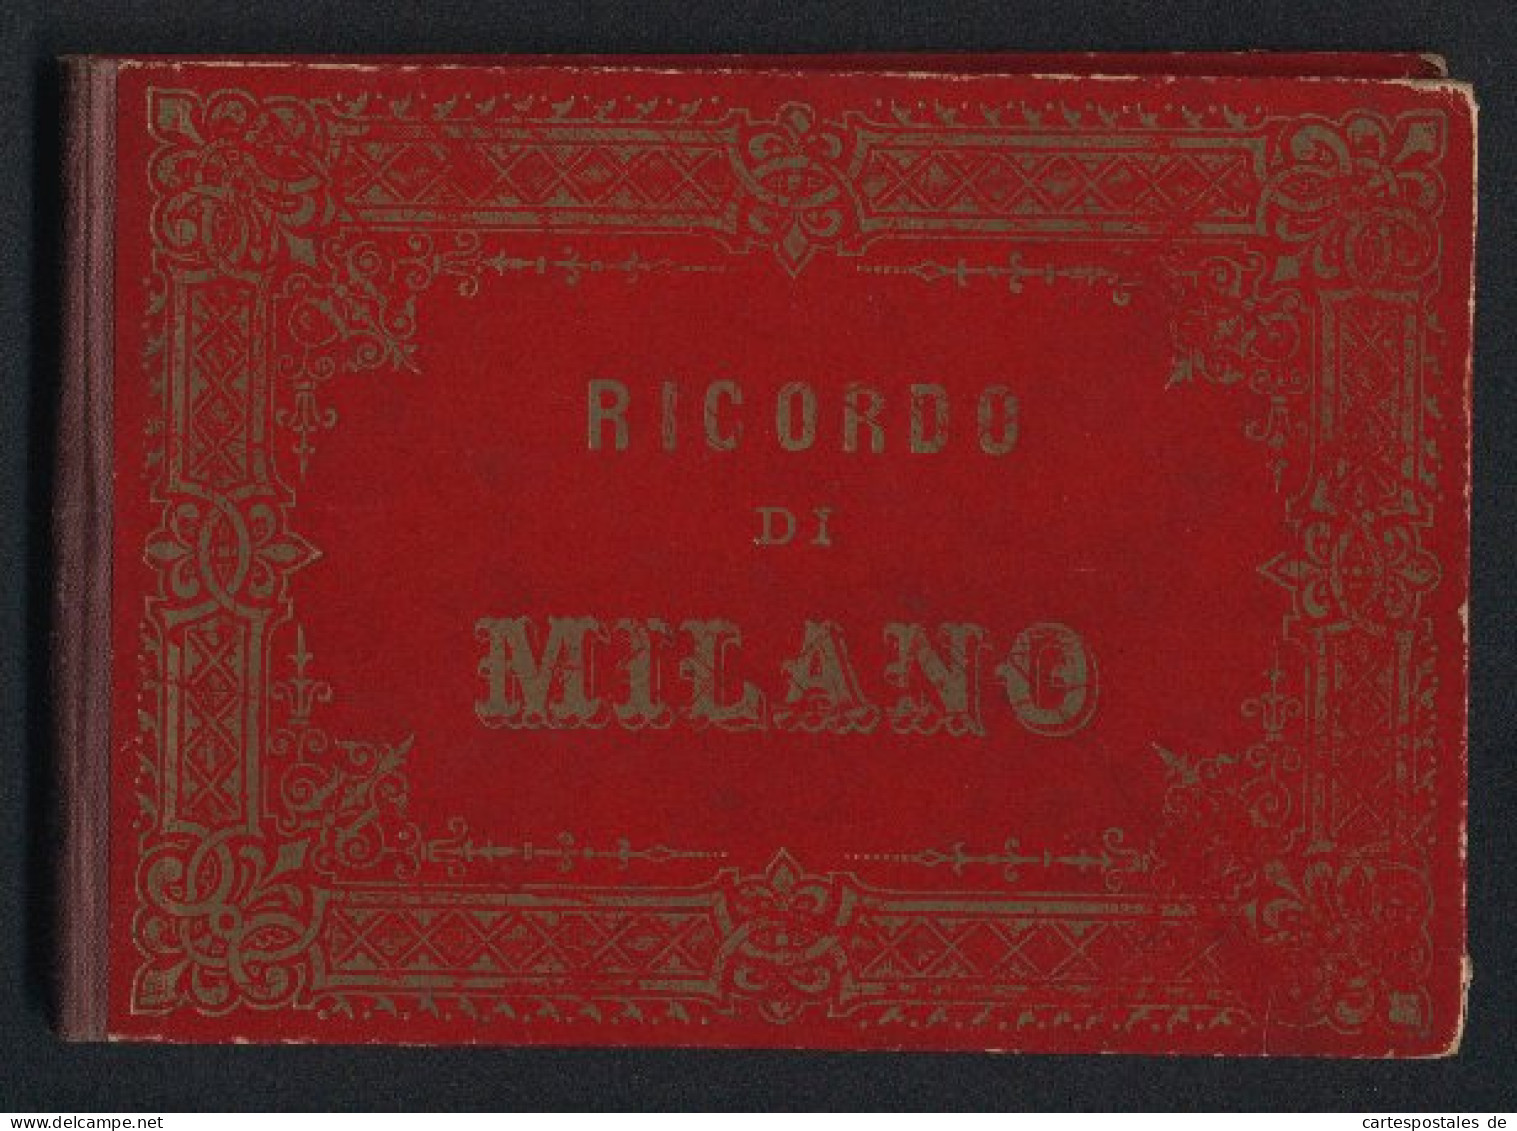 Leporello-Album Milano Mit 12 Lithographie-Ansichten, Campo Santo, Cortile Del Palazzo Marino, Piazza Del Duomo, Panor  - Litografía